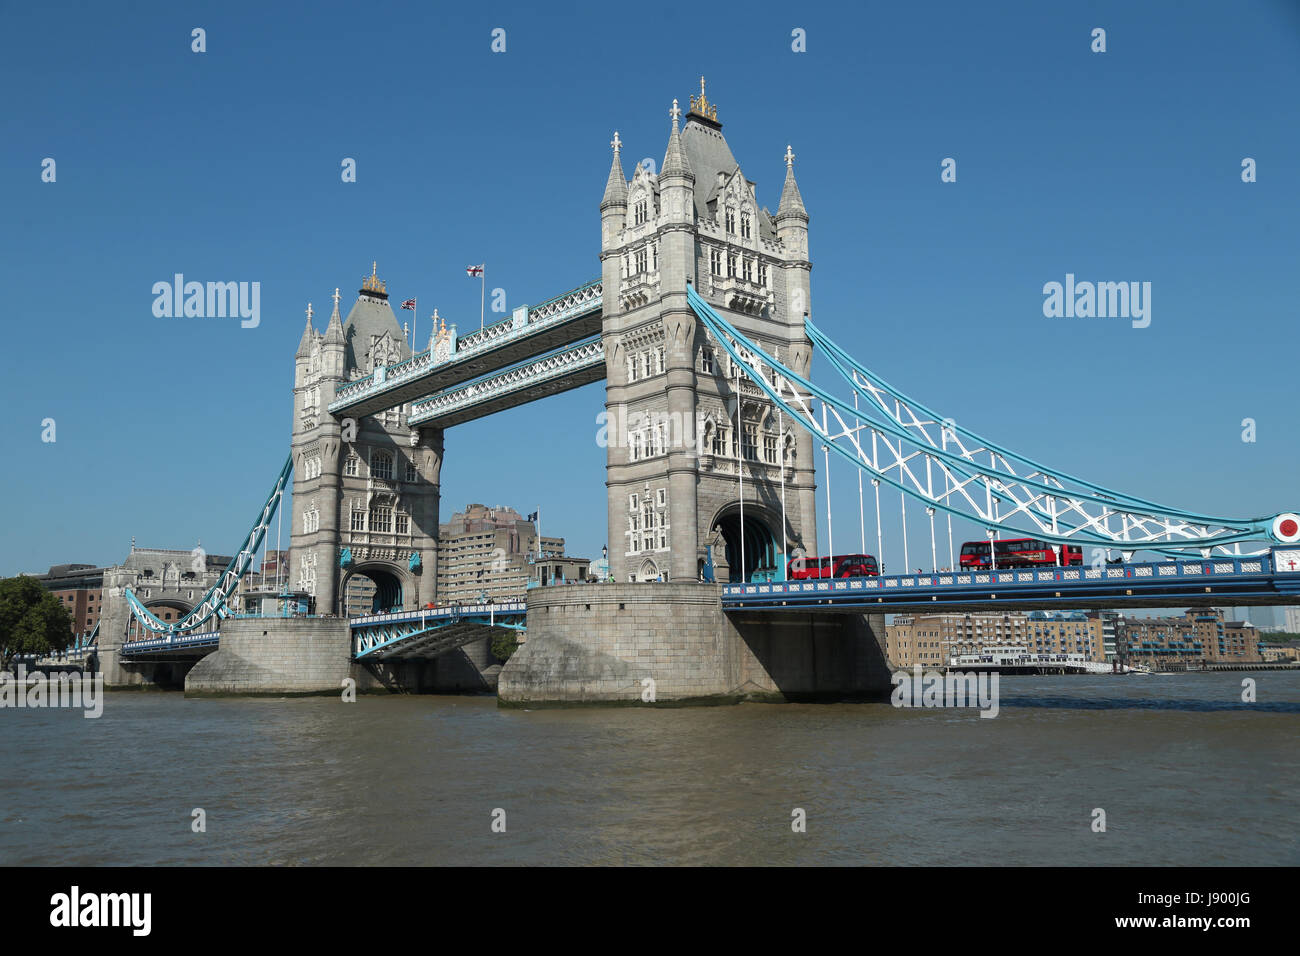 El icónico Tower Bridge de Londres, uno de los edificios más famosos del mundo, que fue construido hace más de 120 años. Foto de stock